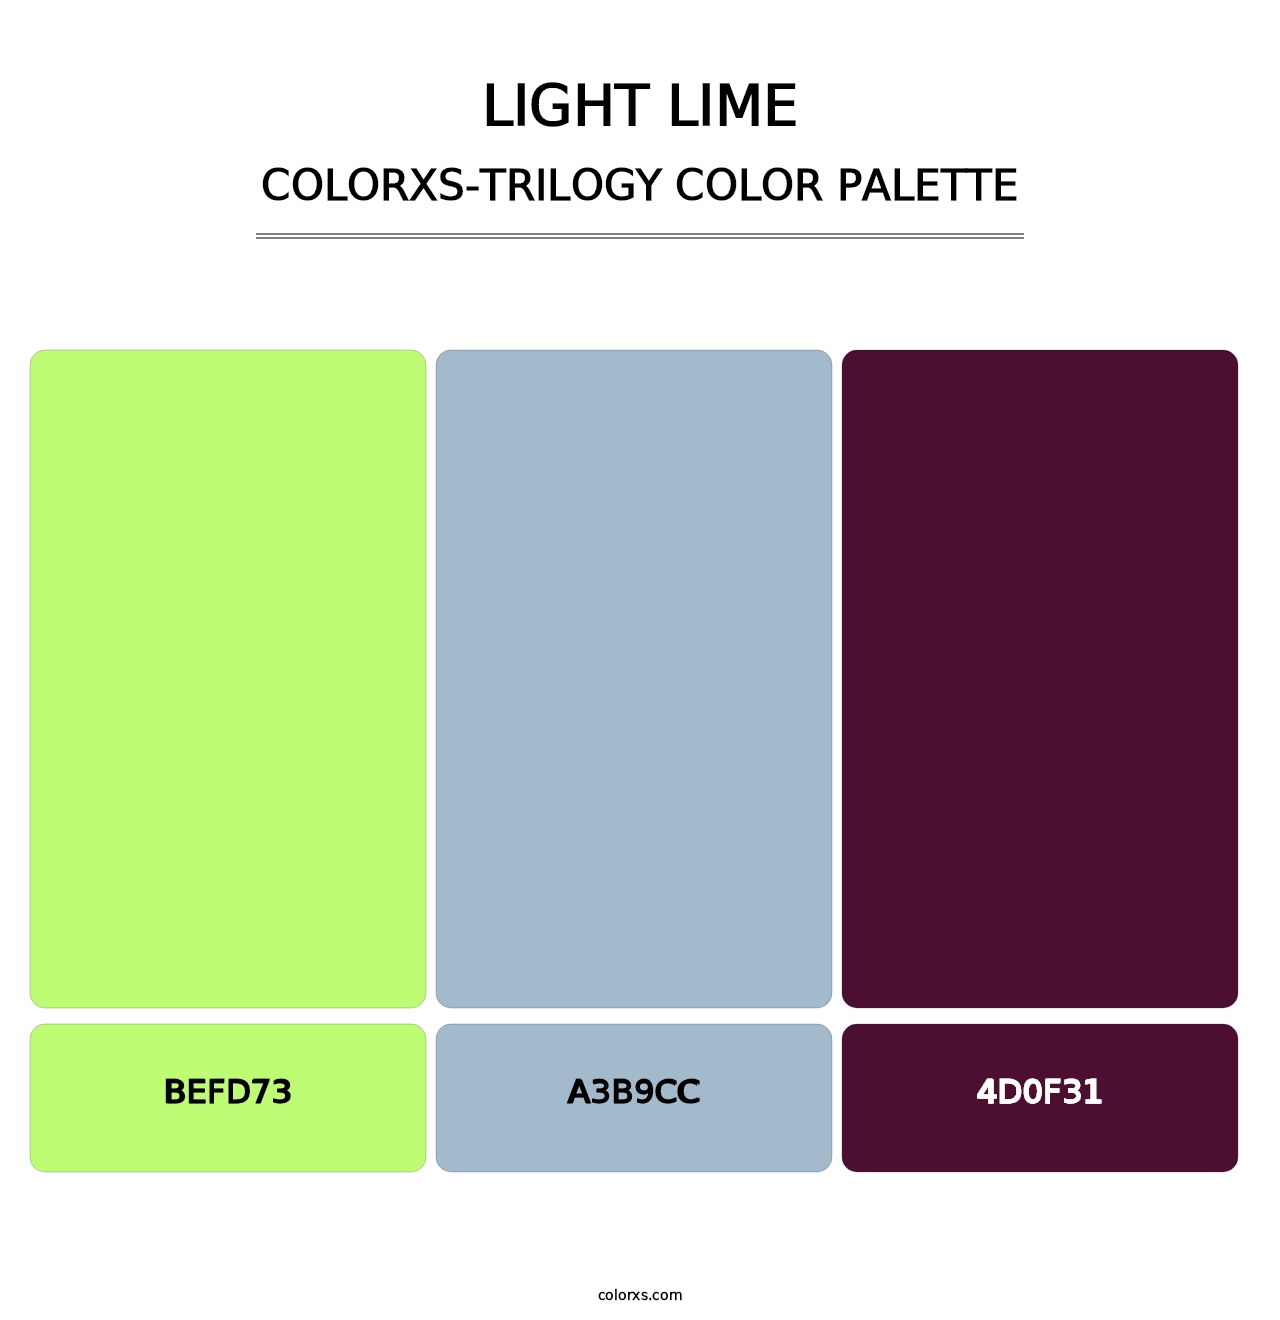 Light Lime - Colorxs Trilogy Palette